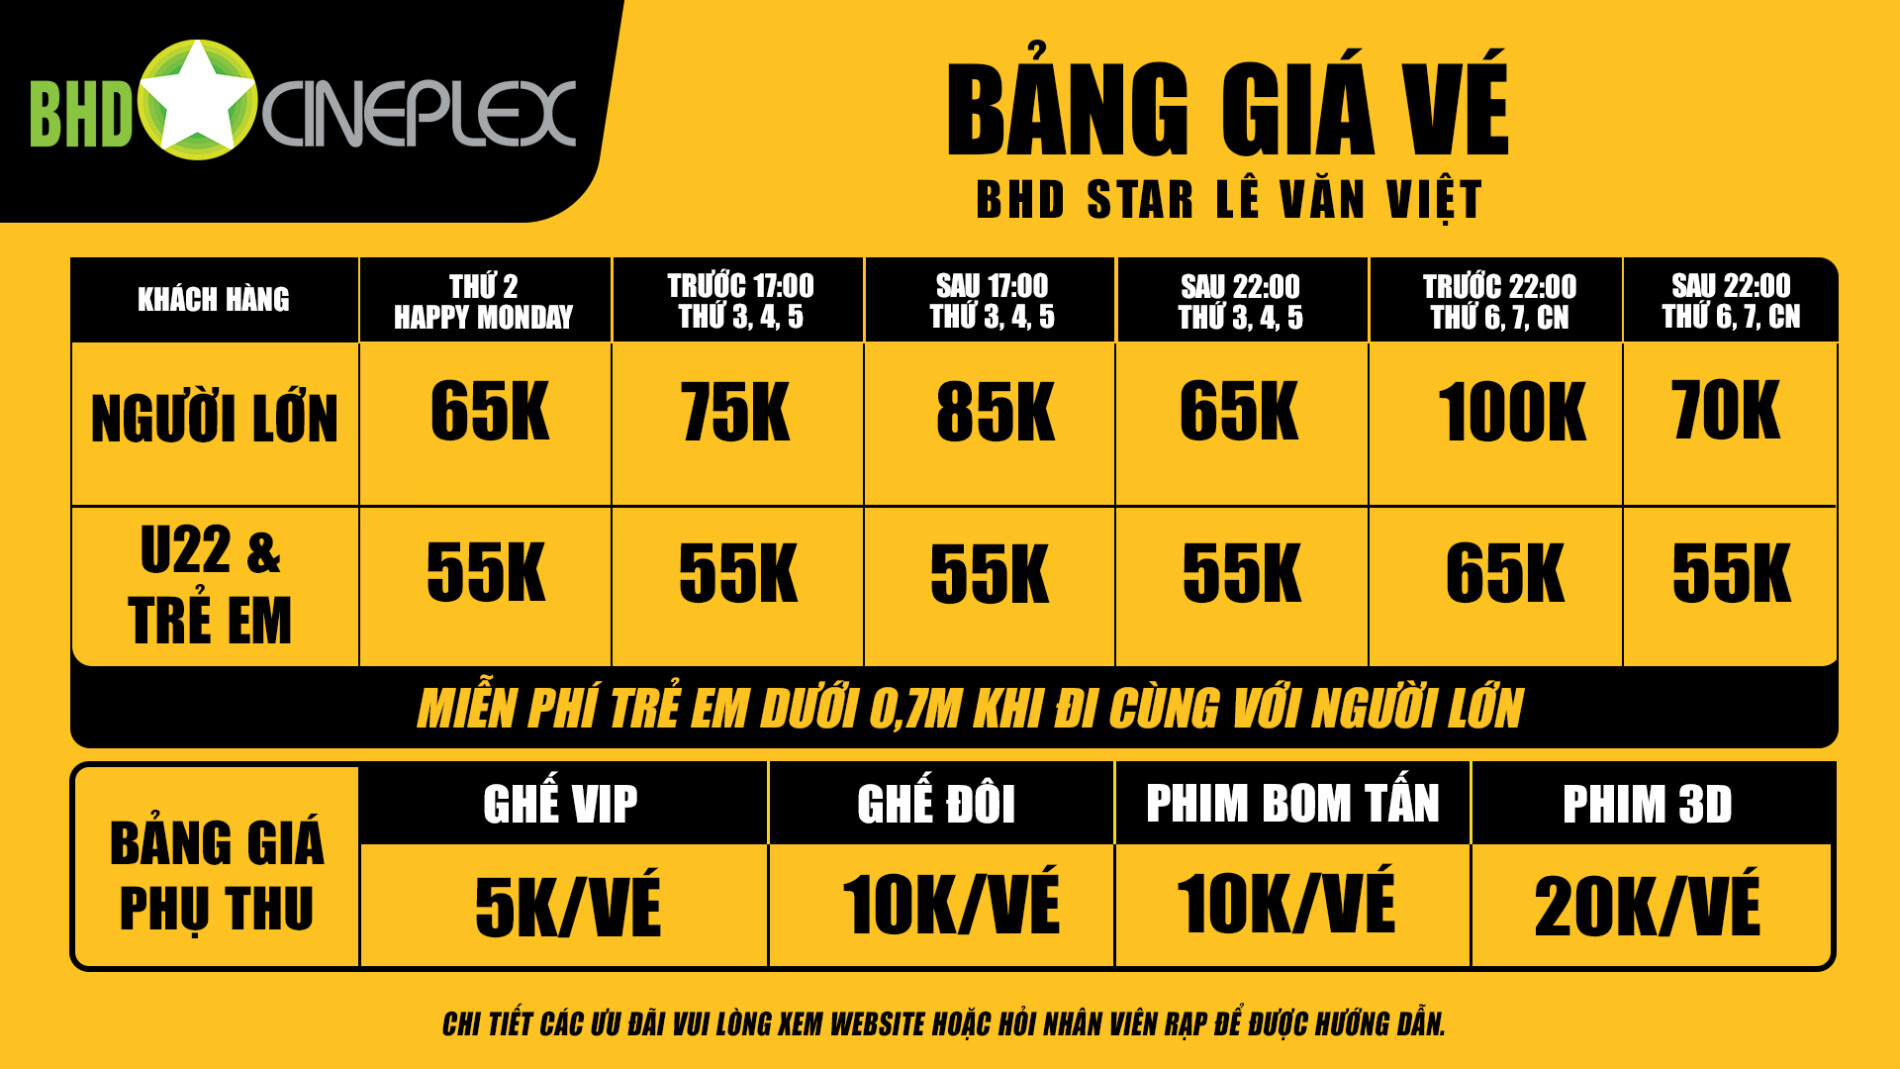 Rạp phim BHD Star Lê Văn Việt